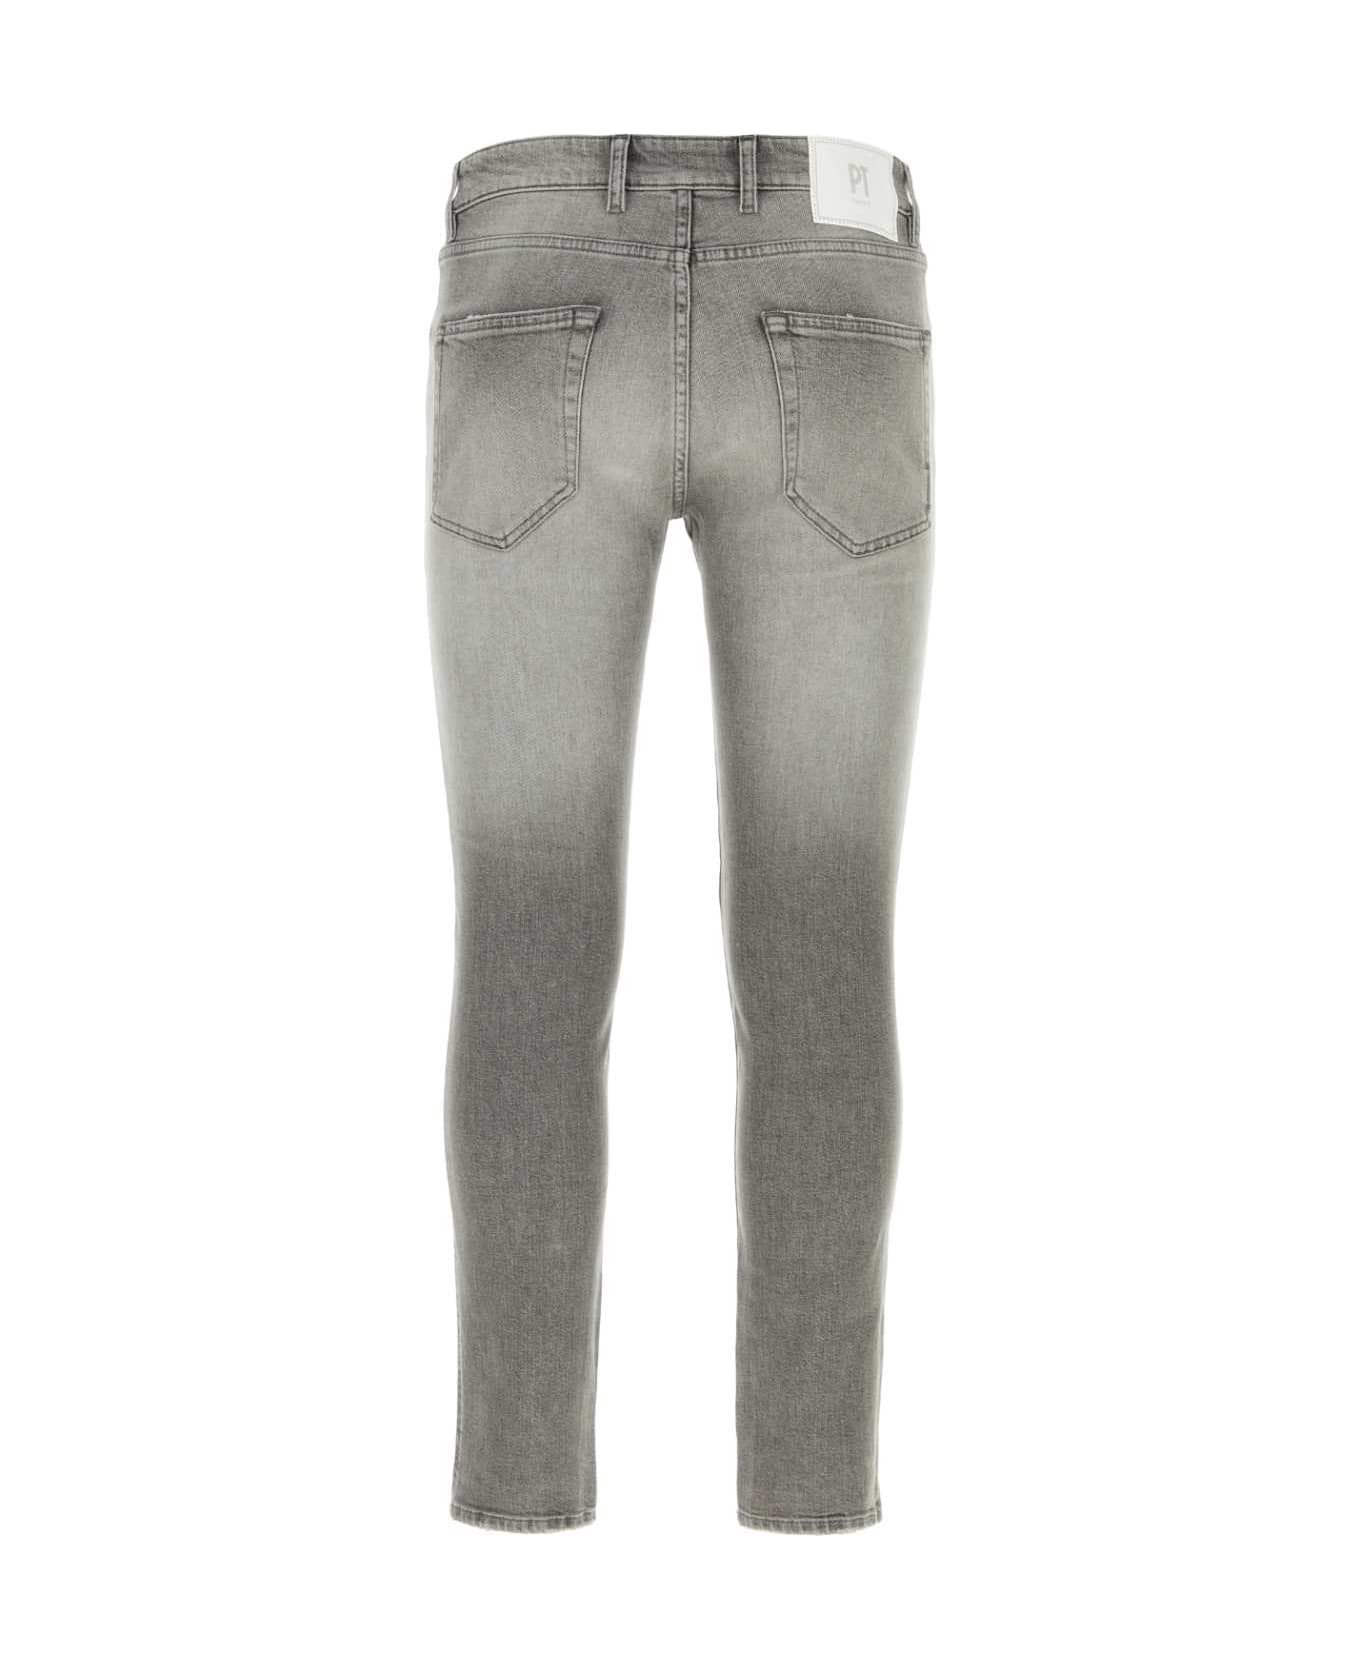 PT Torino Grey Denim Jeans - GRIGIOCHIARO